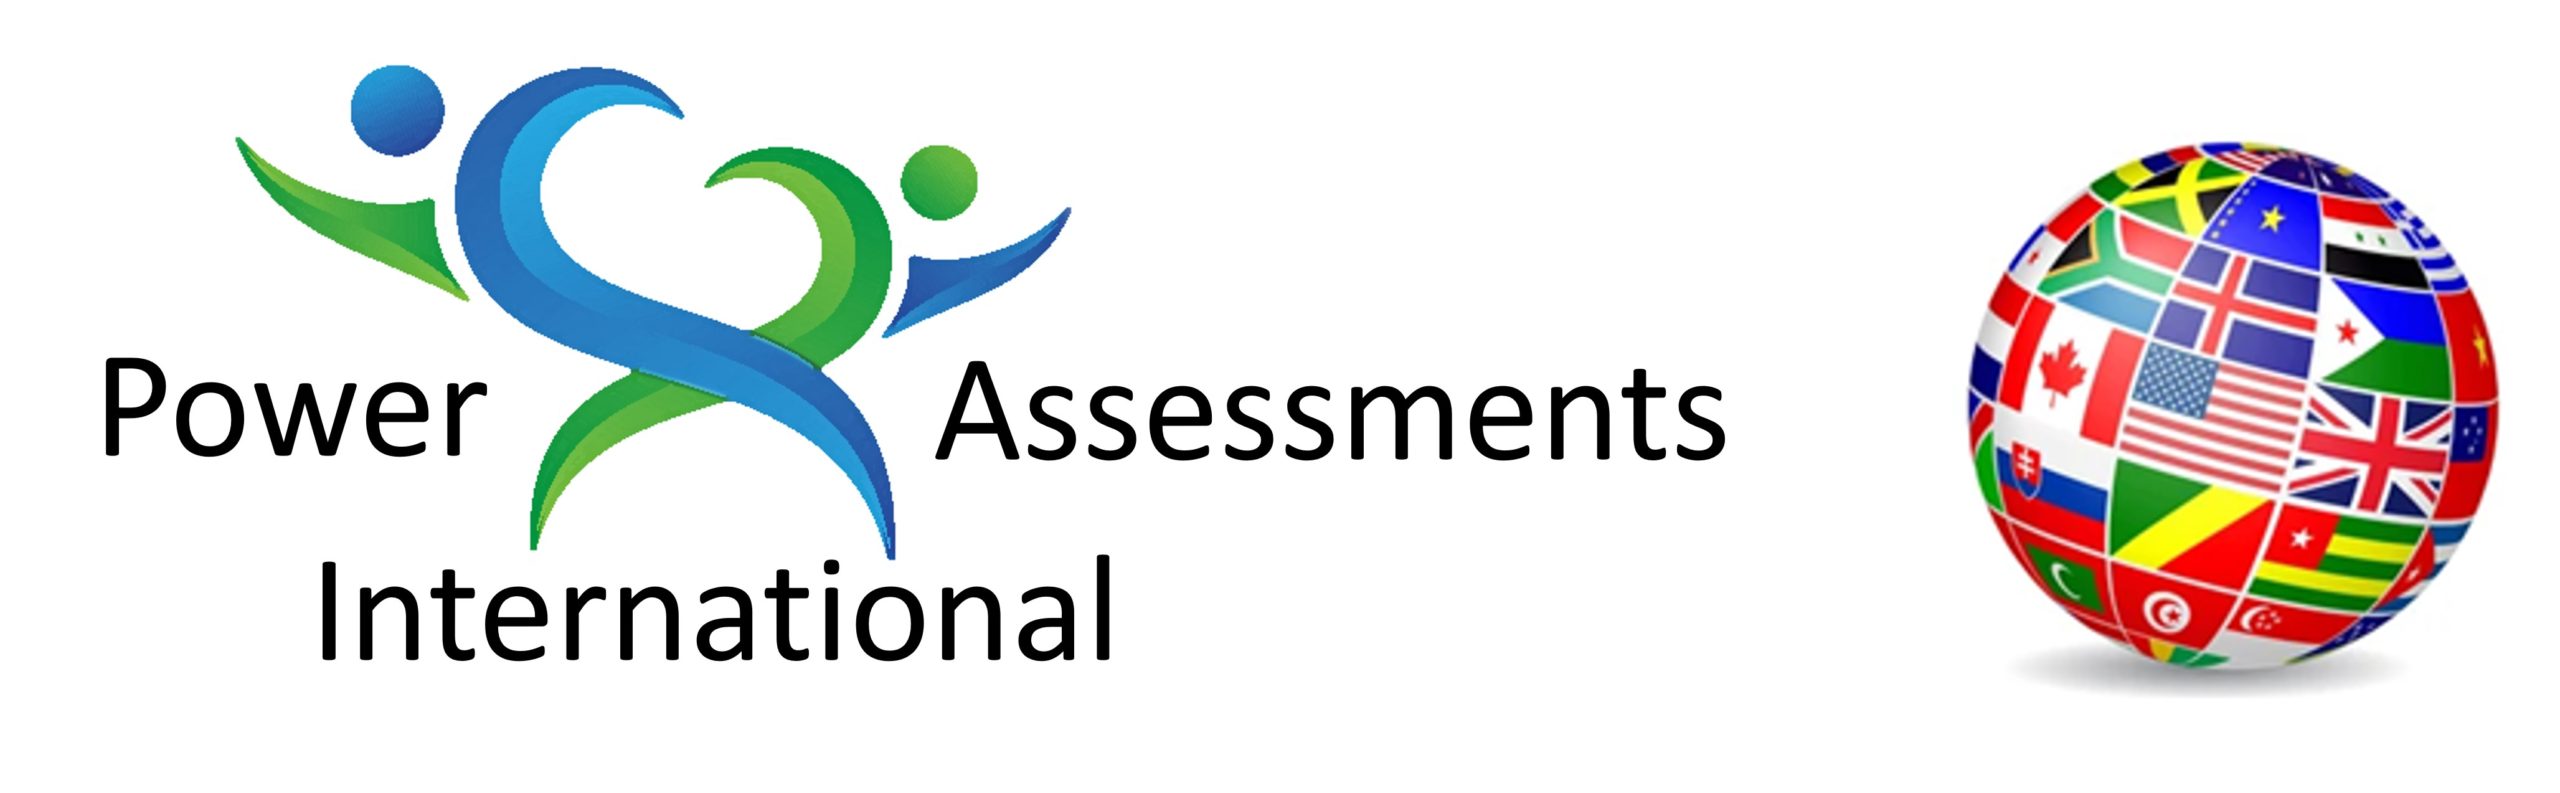 Power Assessments International